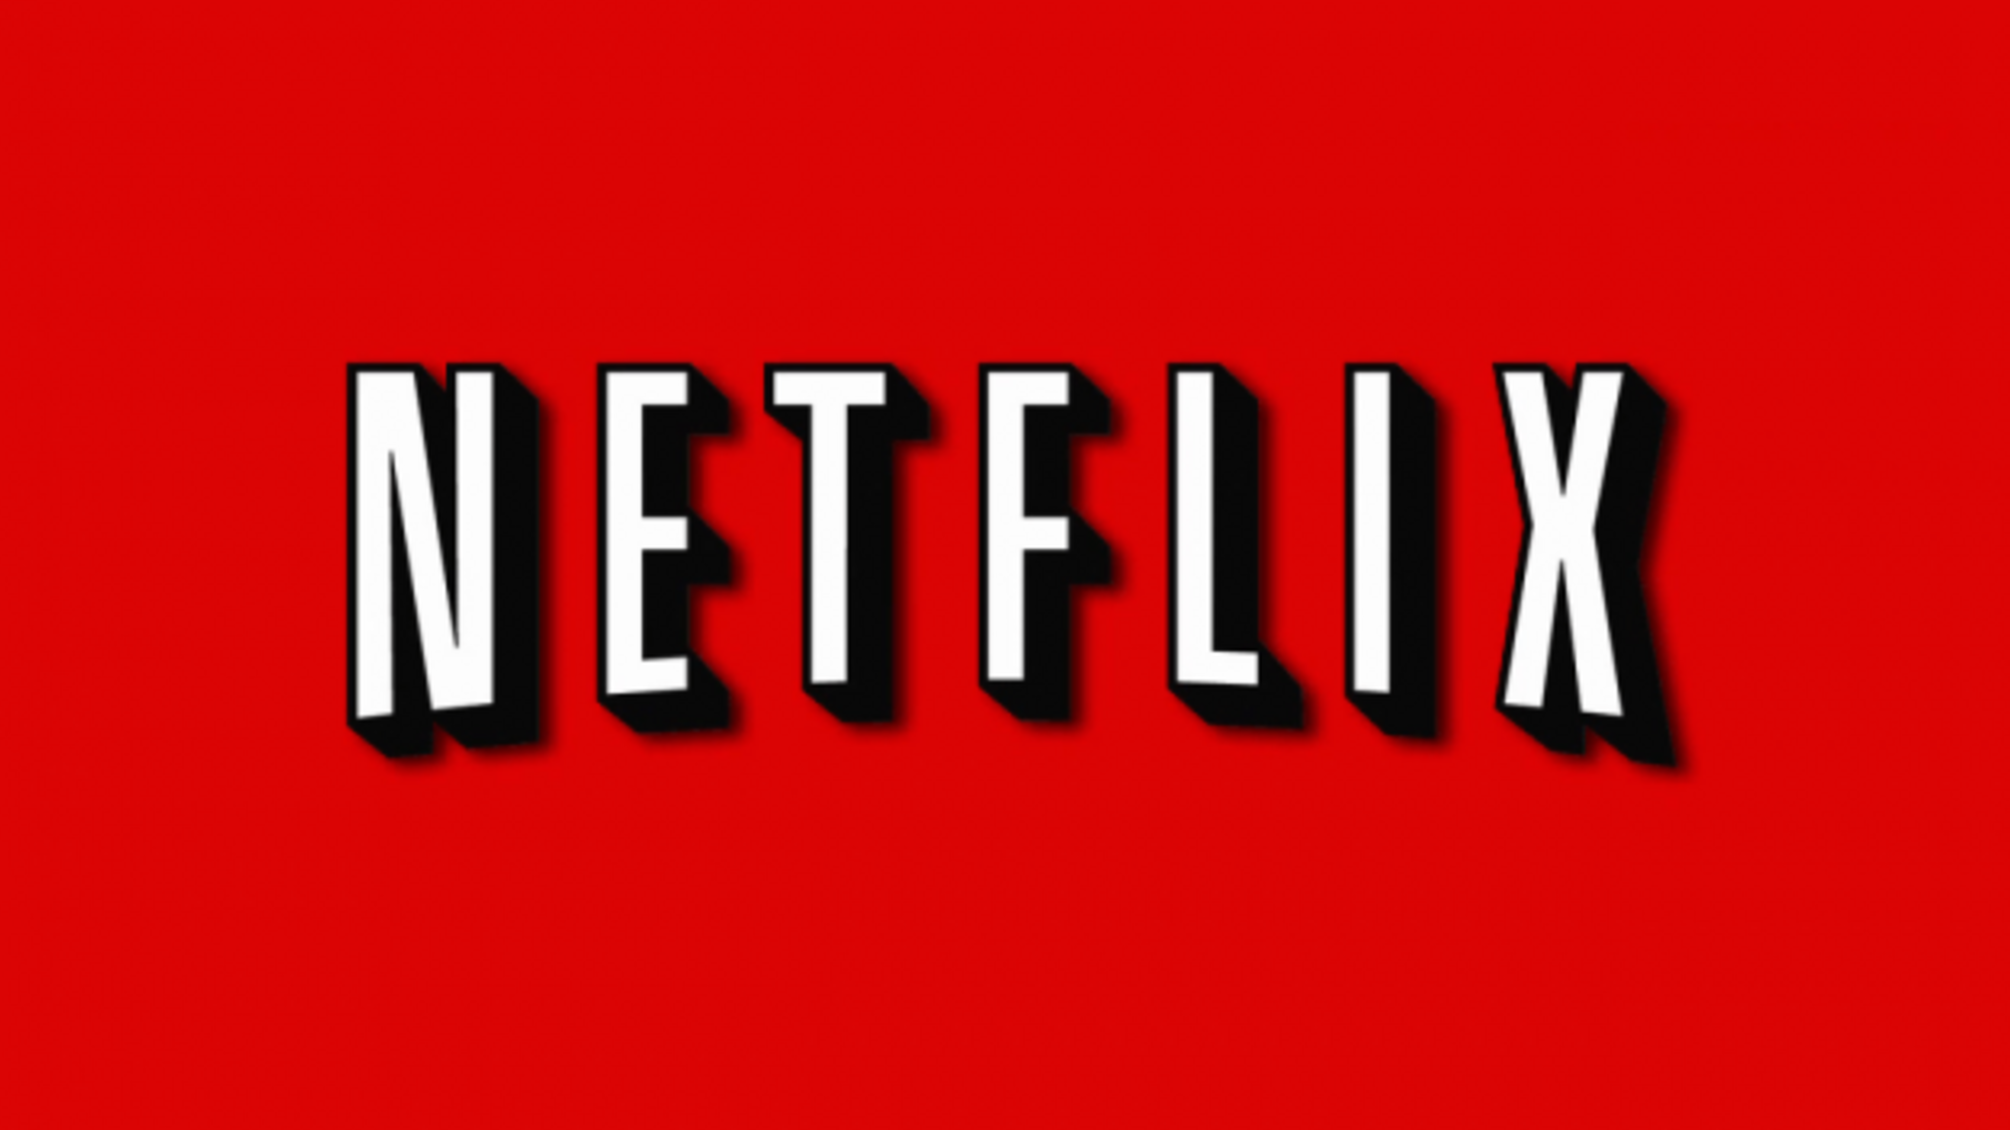 Netflix пообіцяв досягти вуглецевої нейтральності до кінця 2022 року